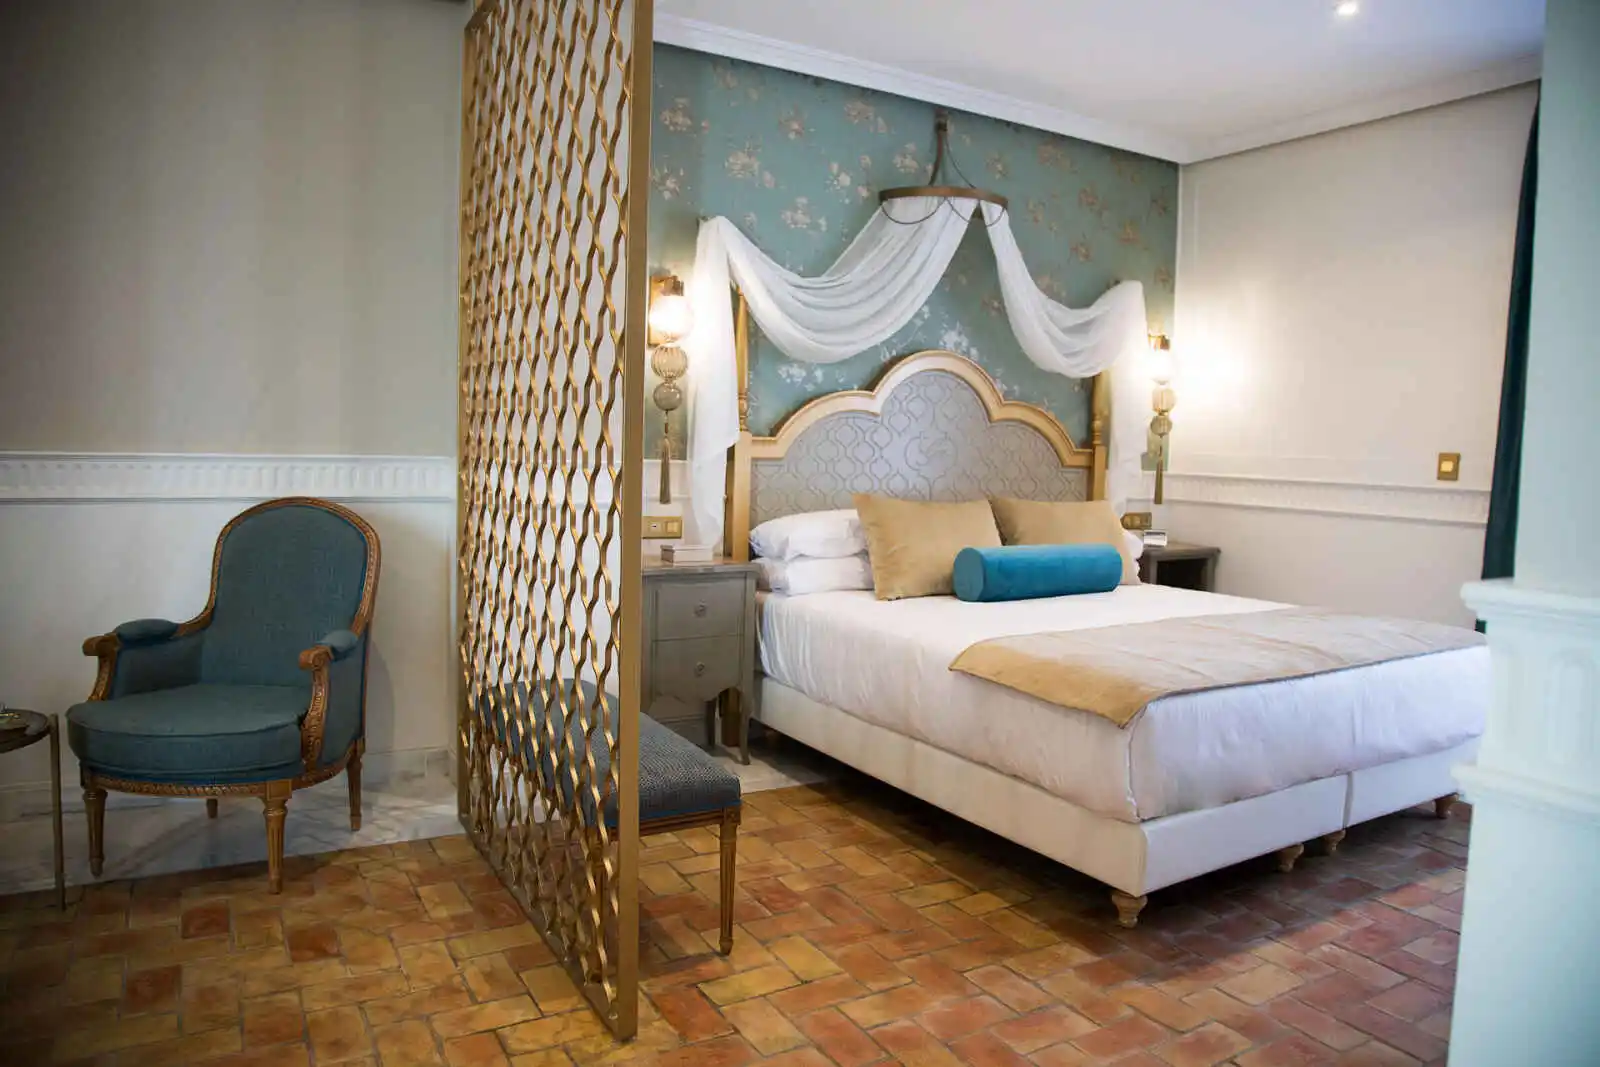 Chambre Double Deluxe avec terrasse, Hôtel Gravina 51, Séville, Espagne